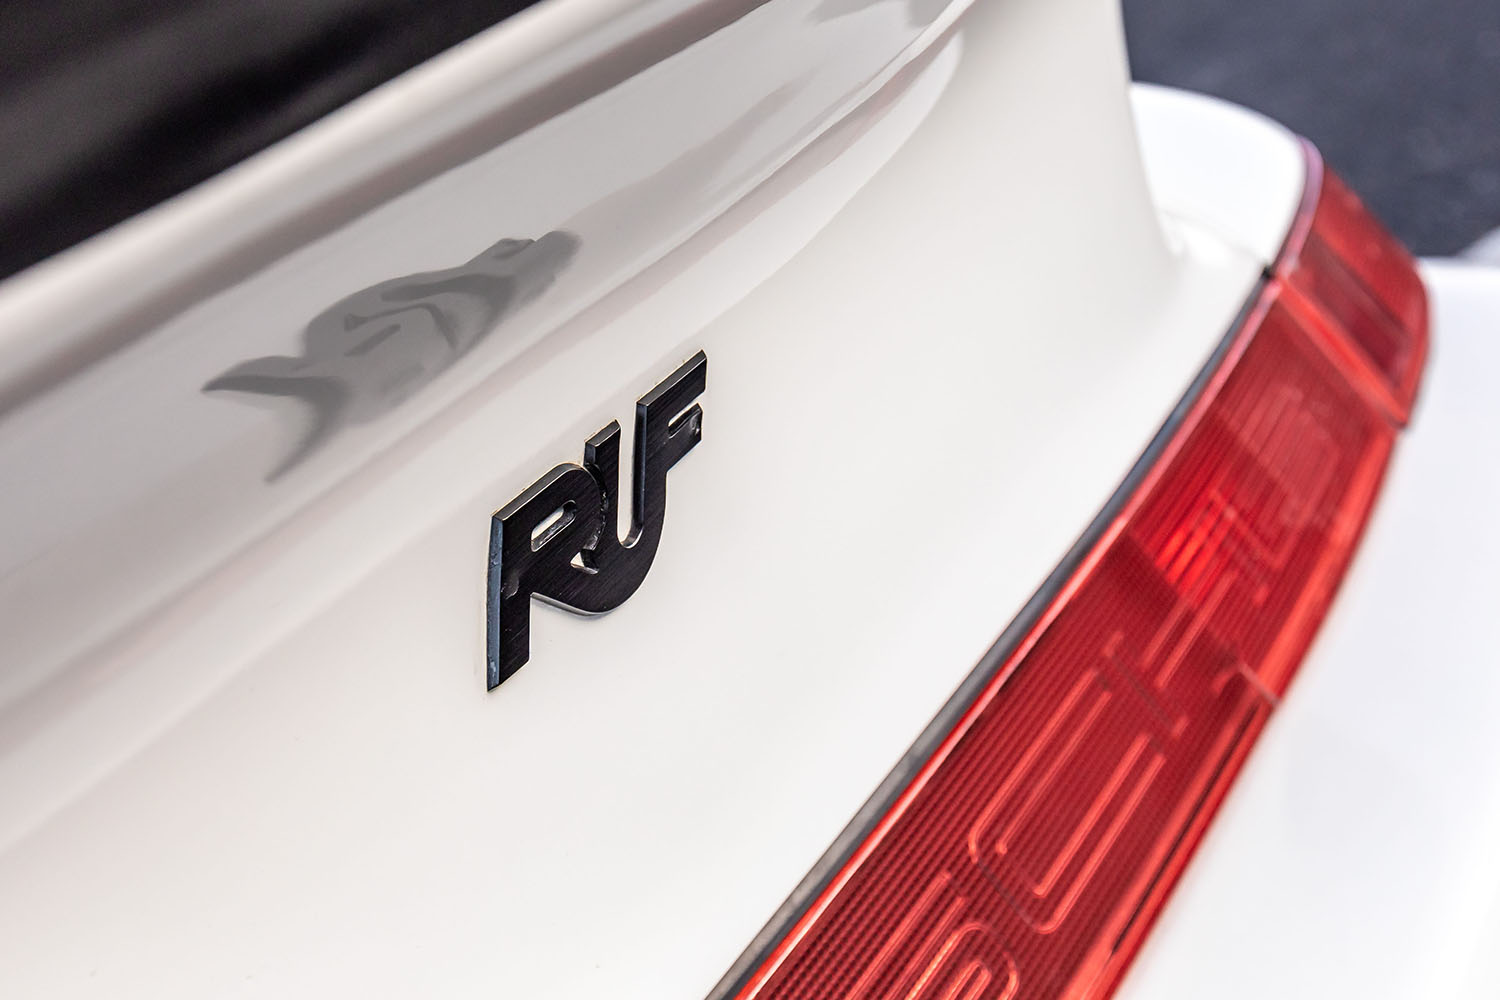 「イエローバード」という世界最速コンプリートカーを産んだ「RUF」という伝説